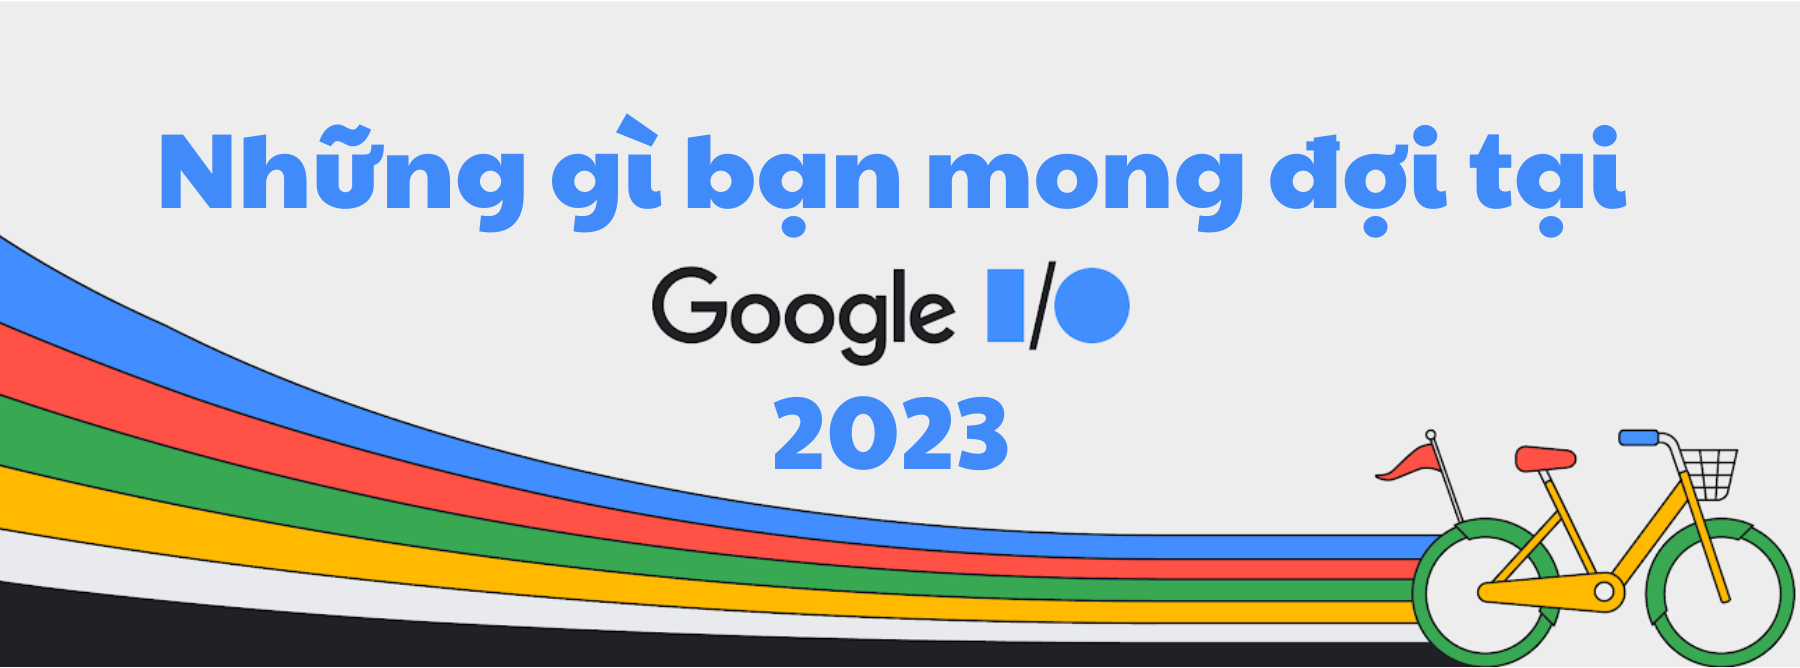 Google I/O 2023 có gì đáng mong đợi?